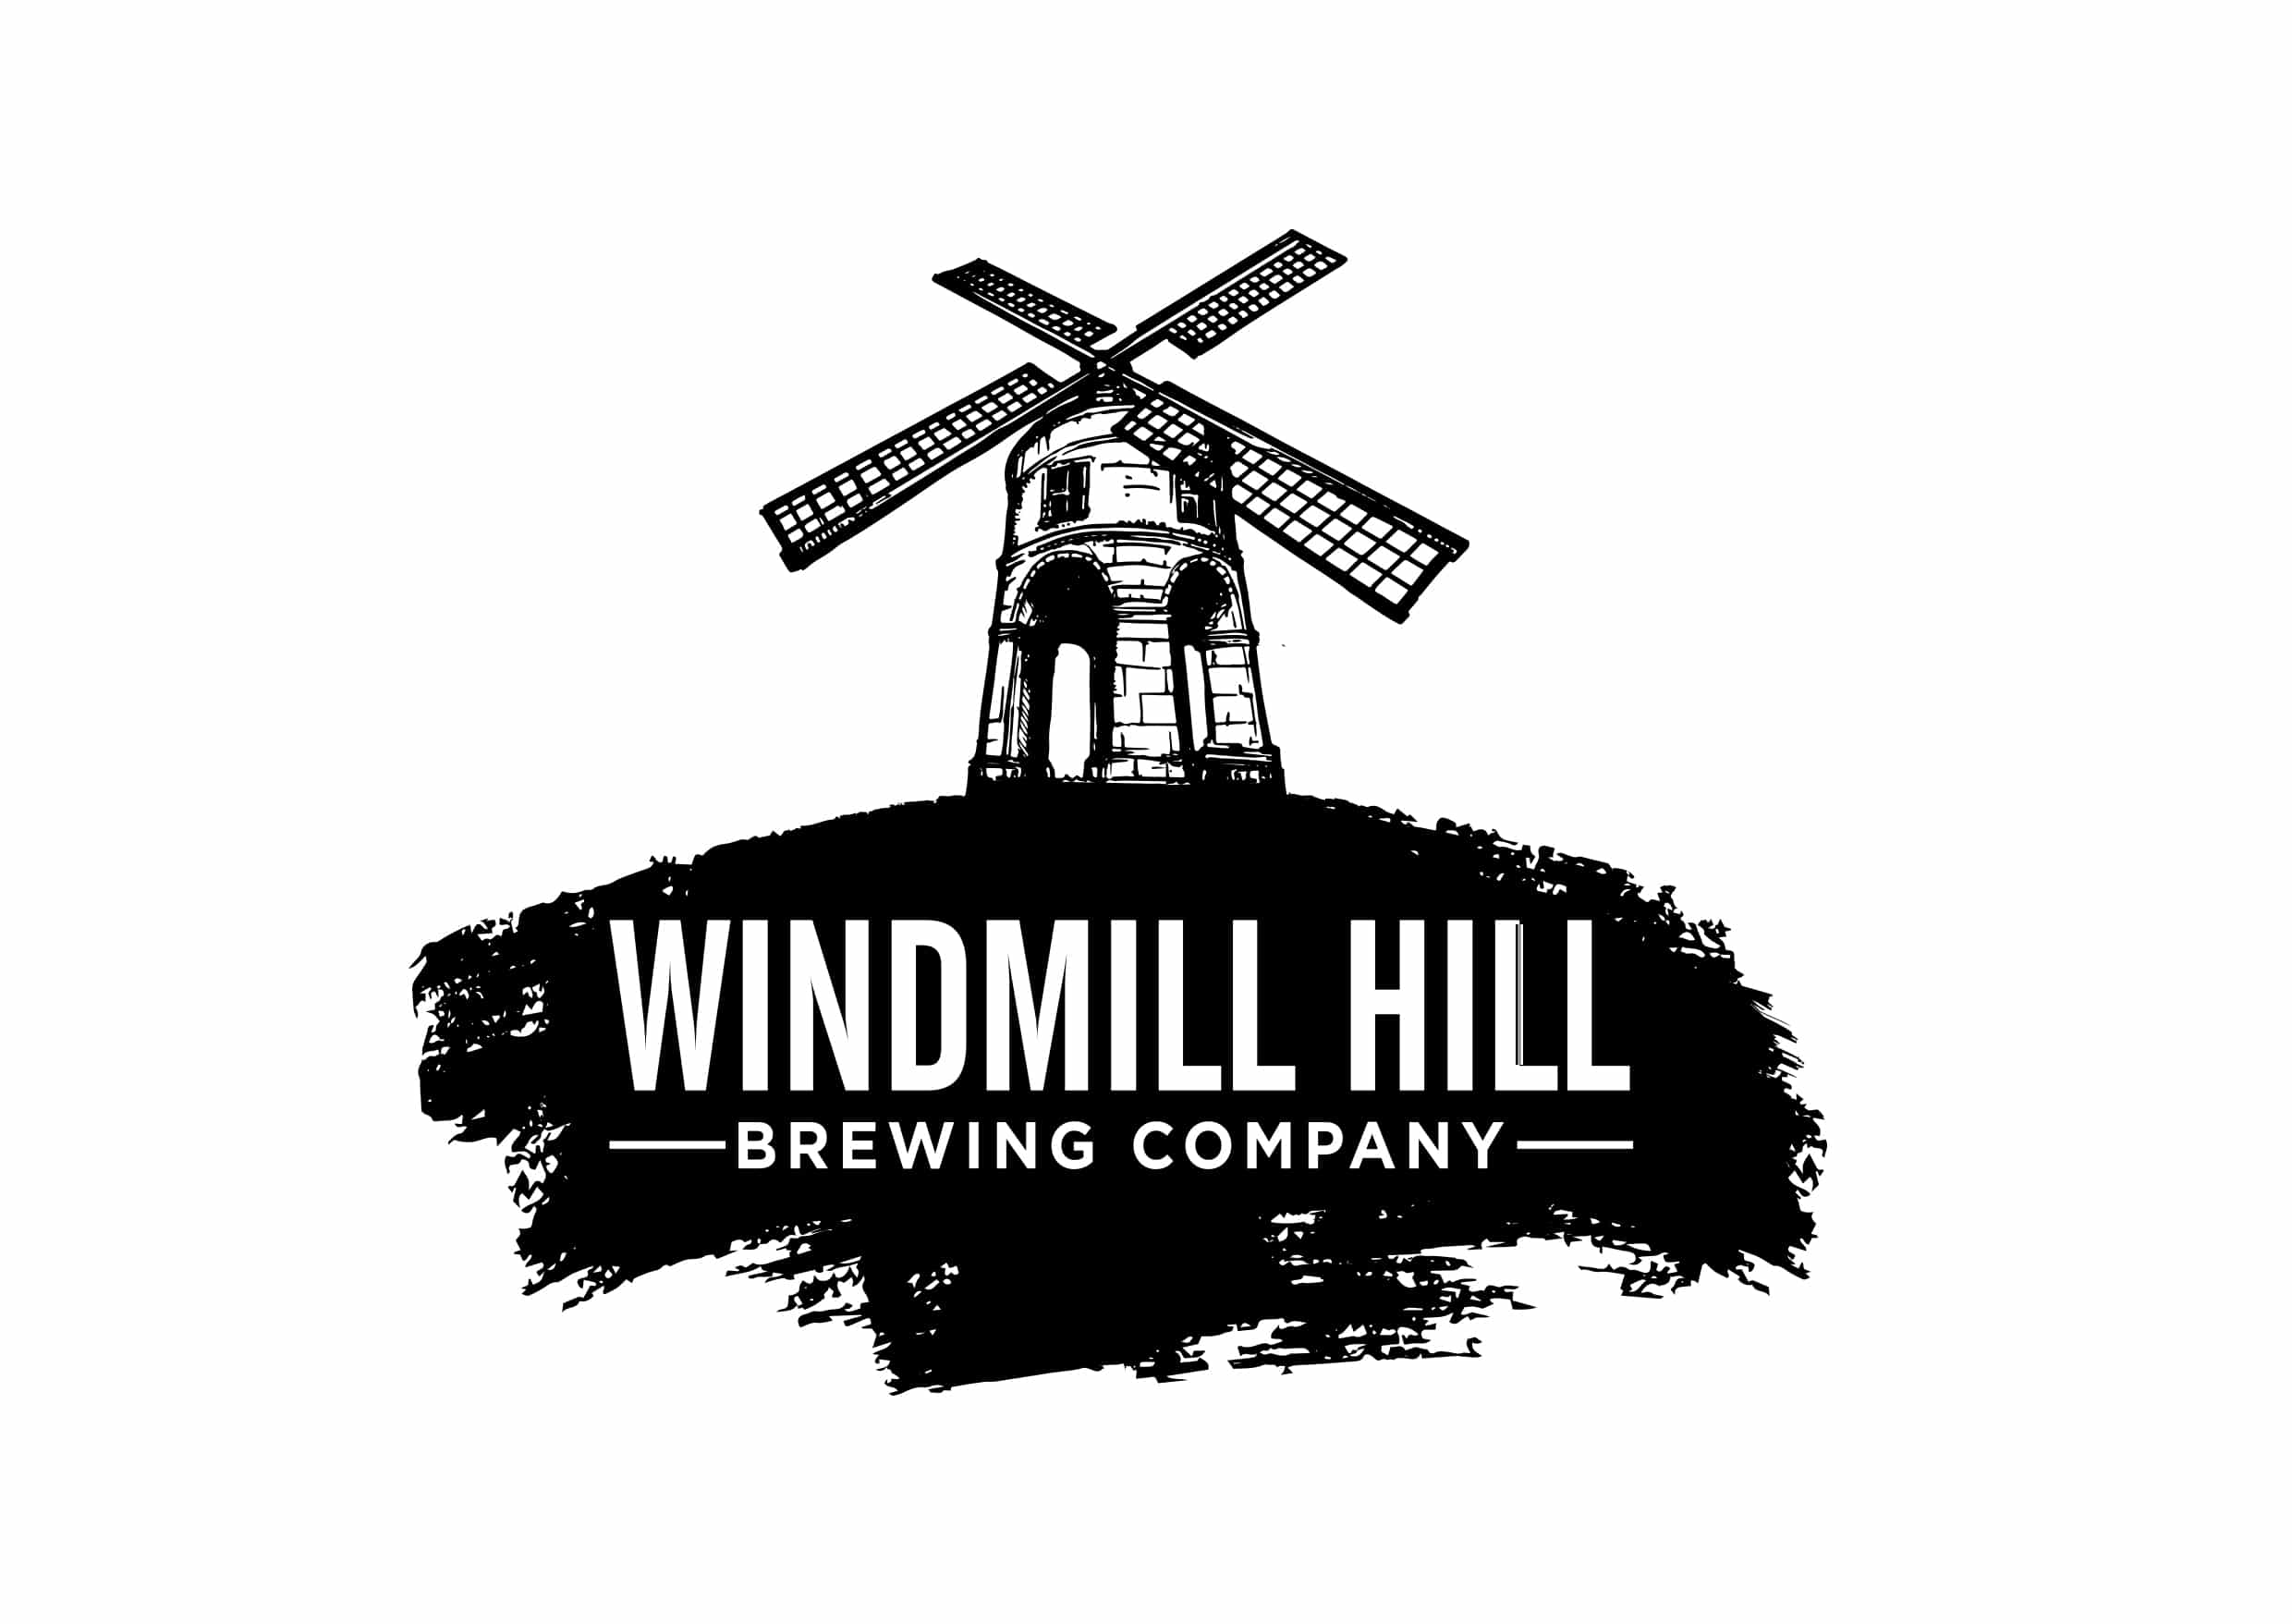 Windmill Hill Brewery